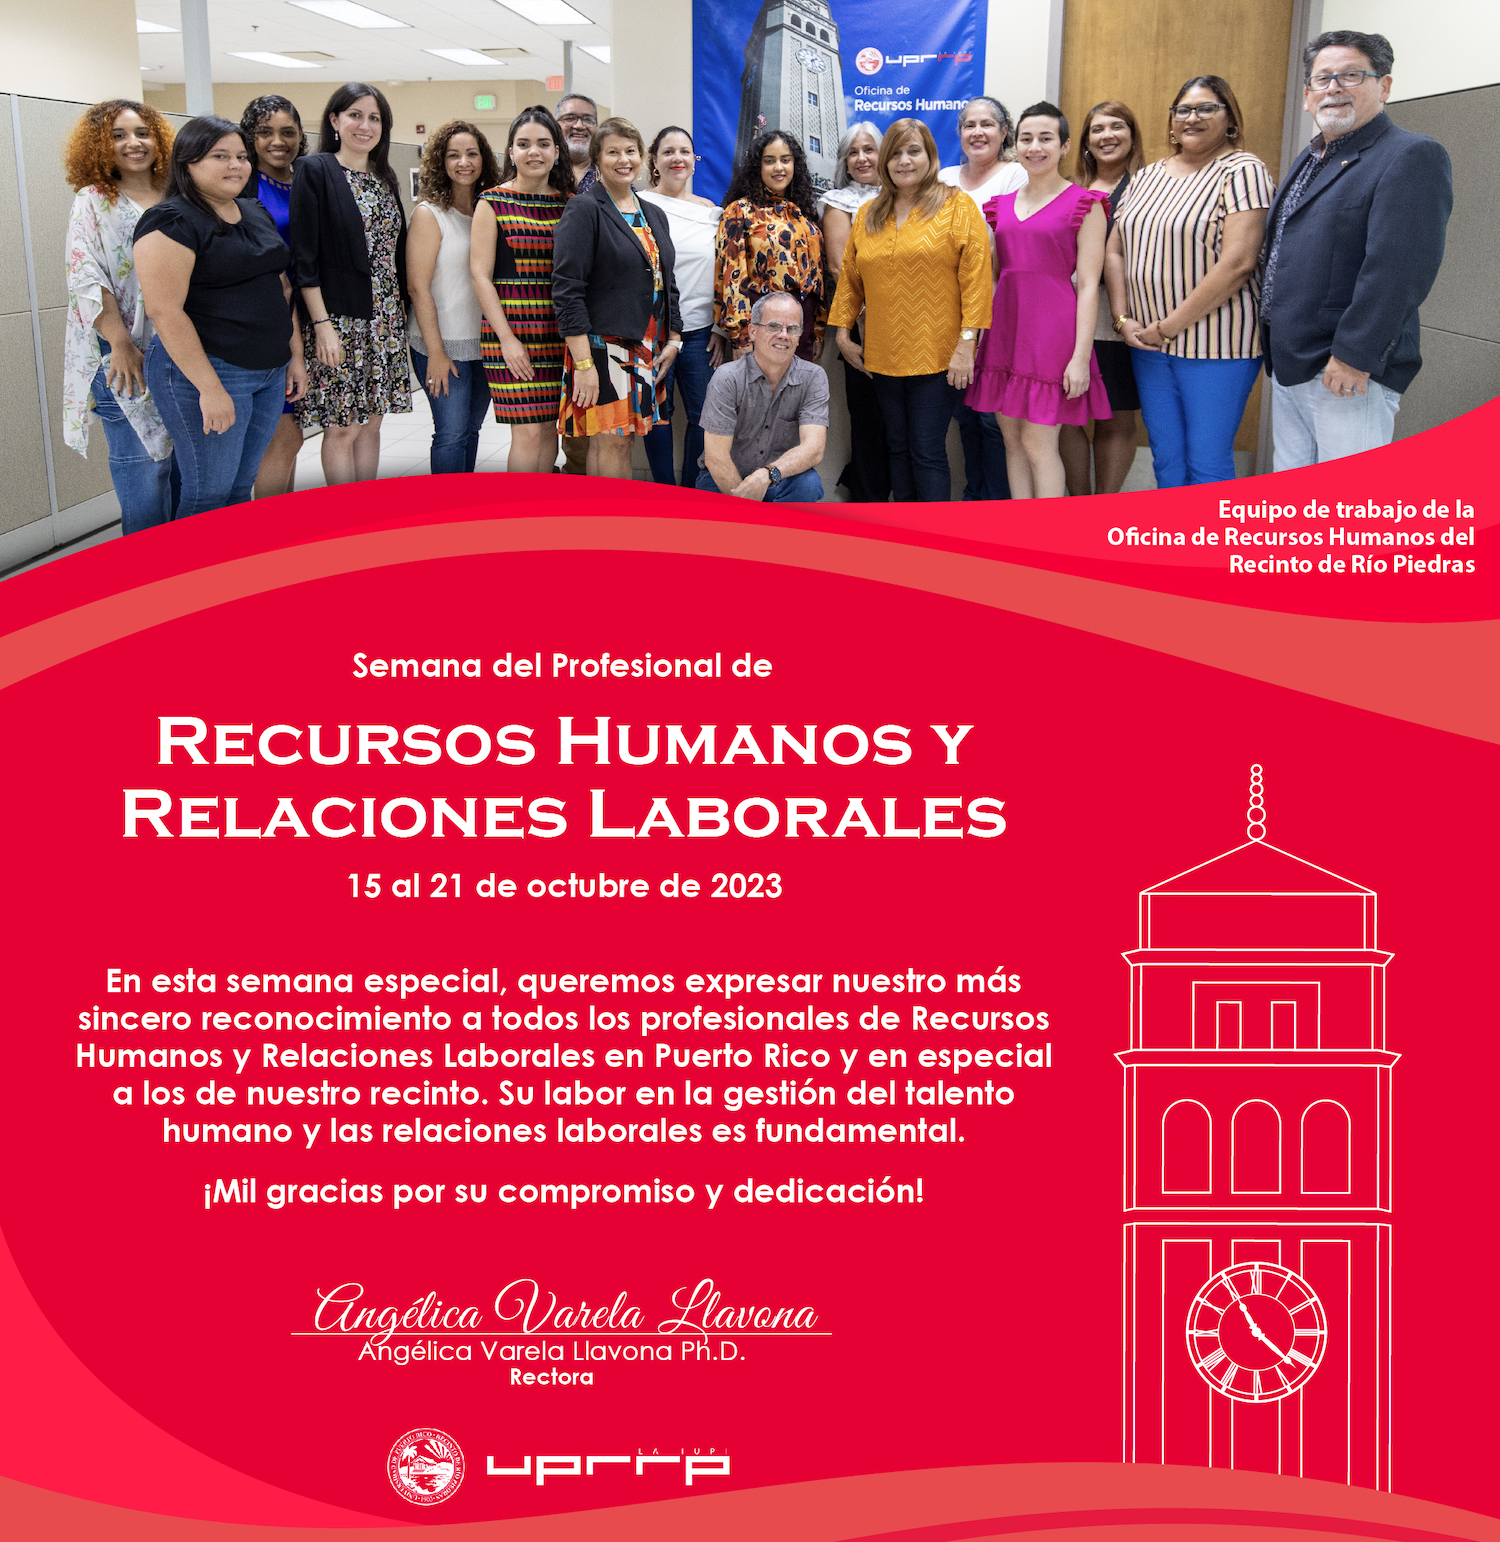 Felicitación en la semana del profesional de Recursos Humanos y Relaciones Laborales